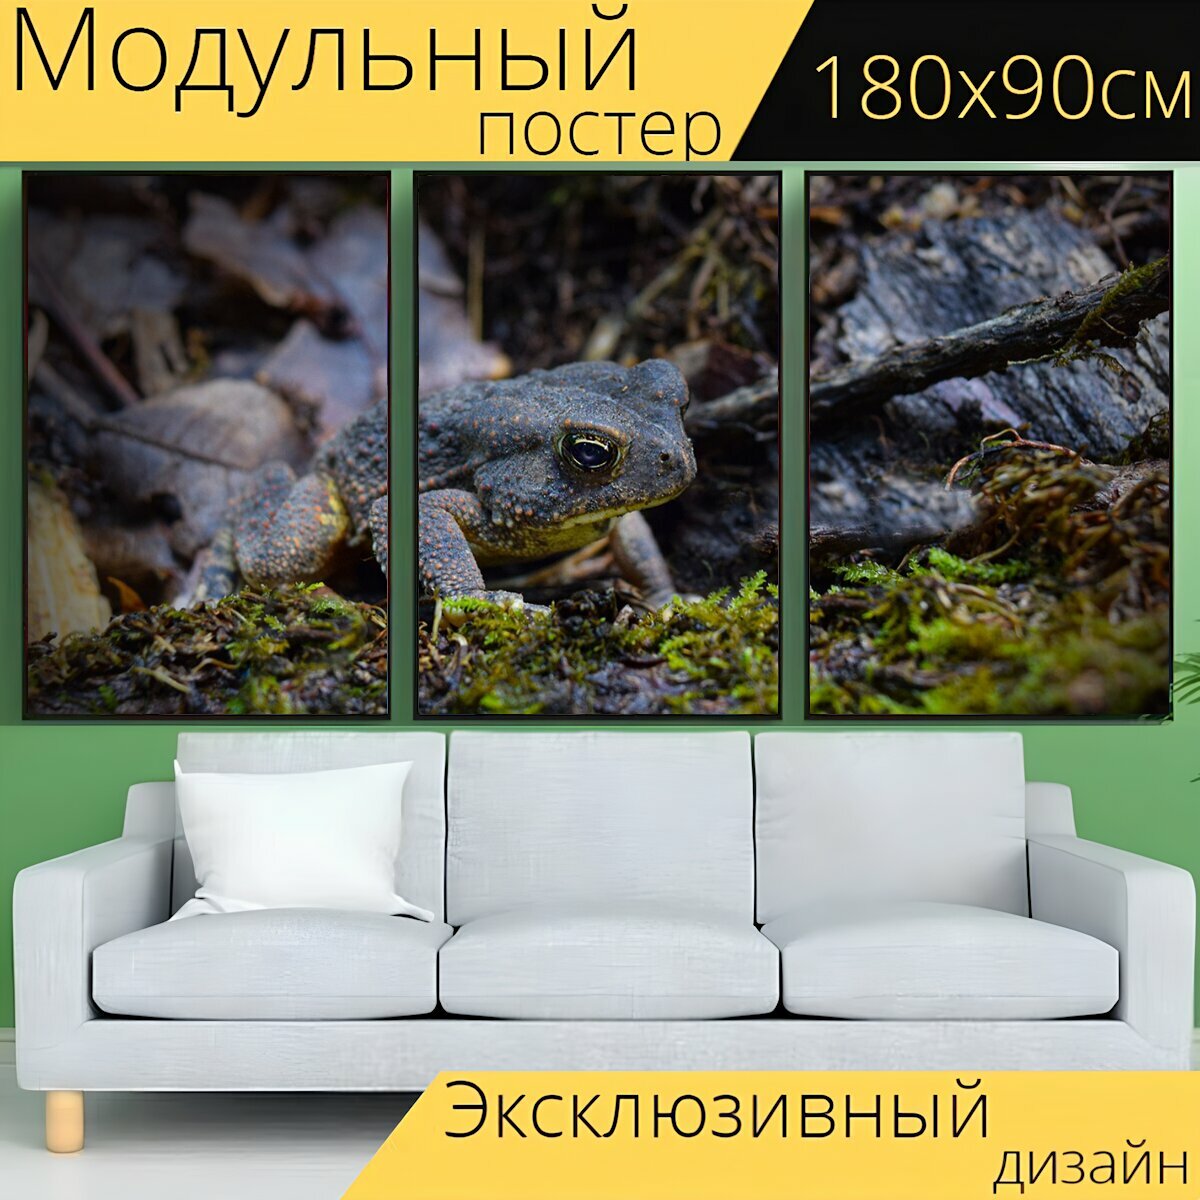 Модульный постер "Жаба, лягушка, природа" 180 x 90 см. для интерьера